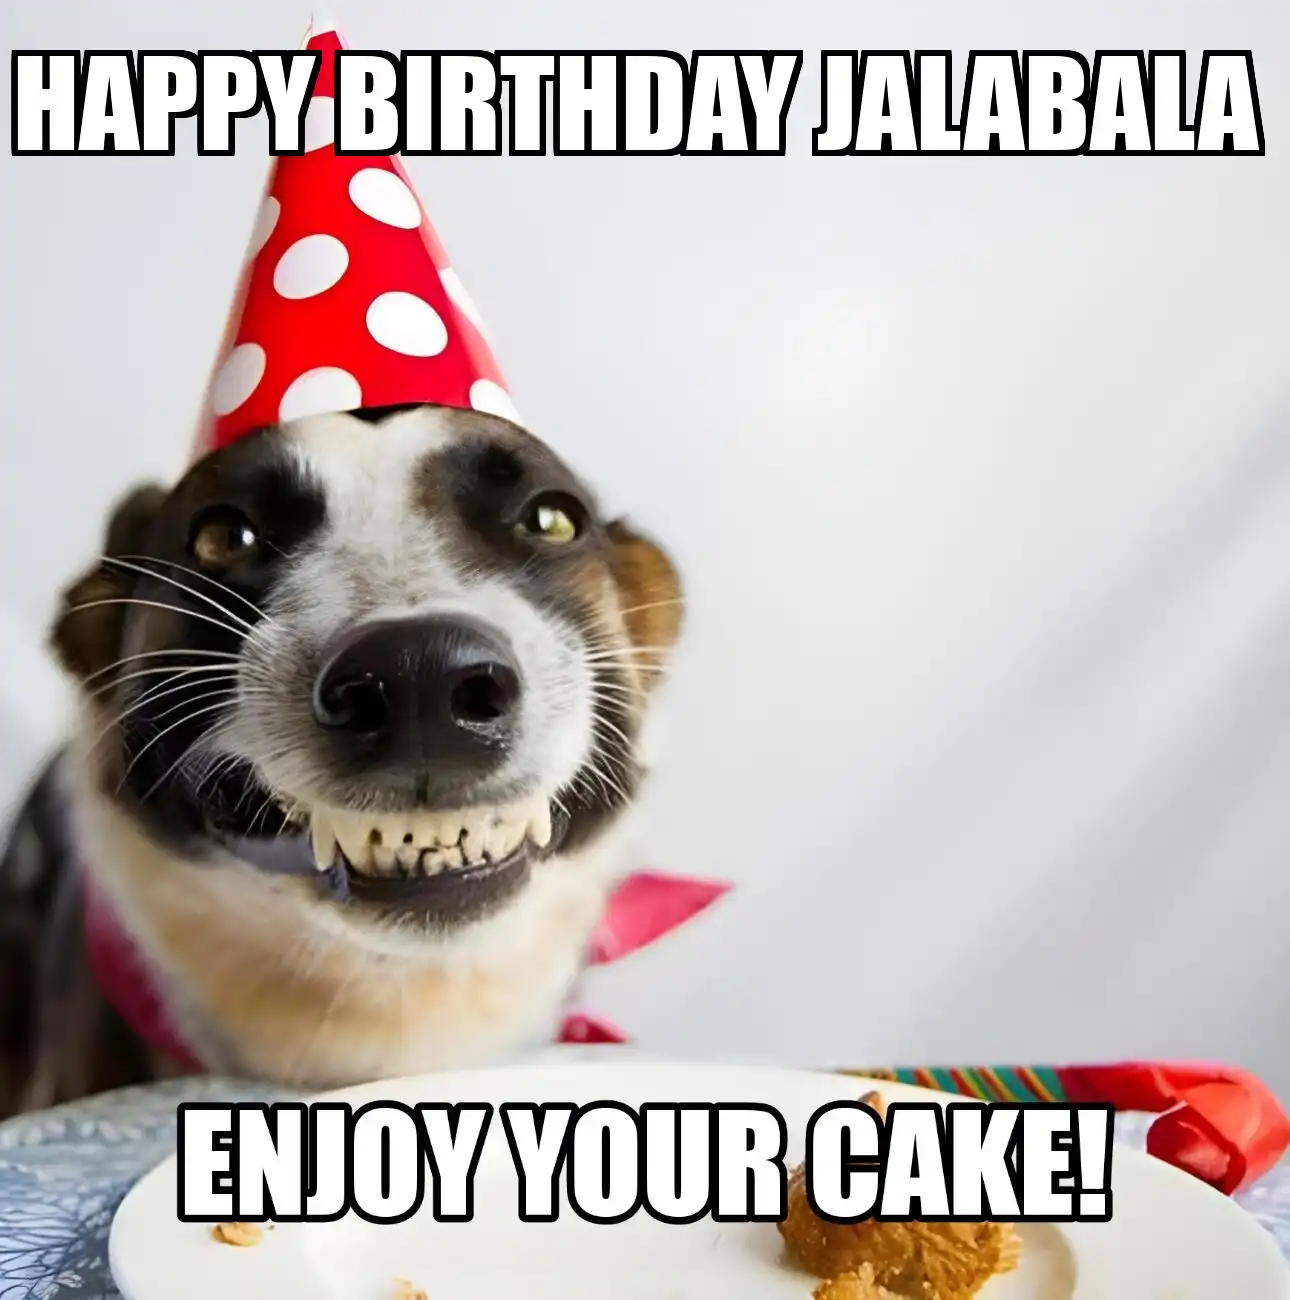 Happy Birthday Jalabala Enjoy Your Cake Dog Meme